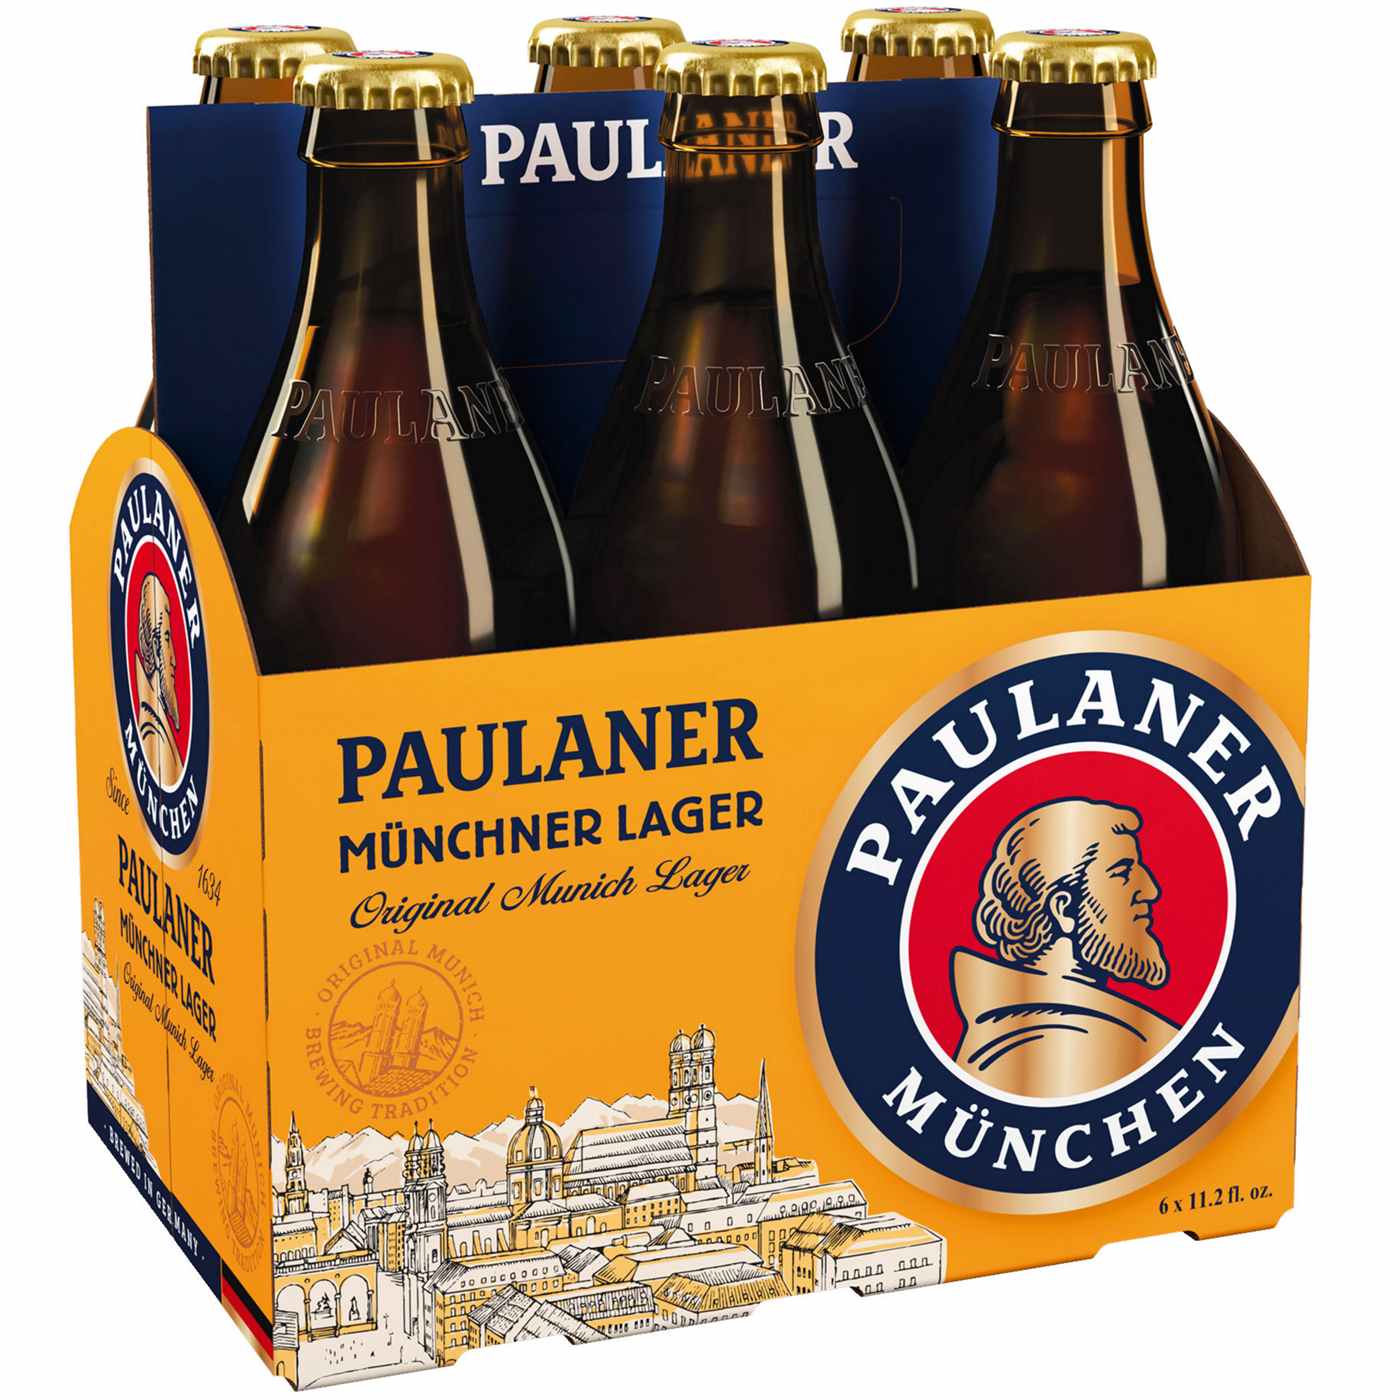 Paulaner Munchner Lager Beer 6 pk Bottles; image 1 of 2